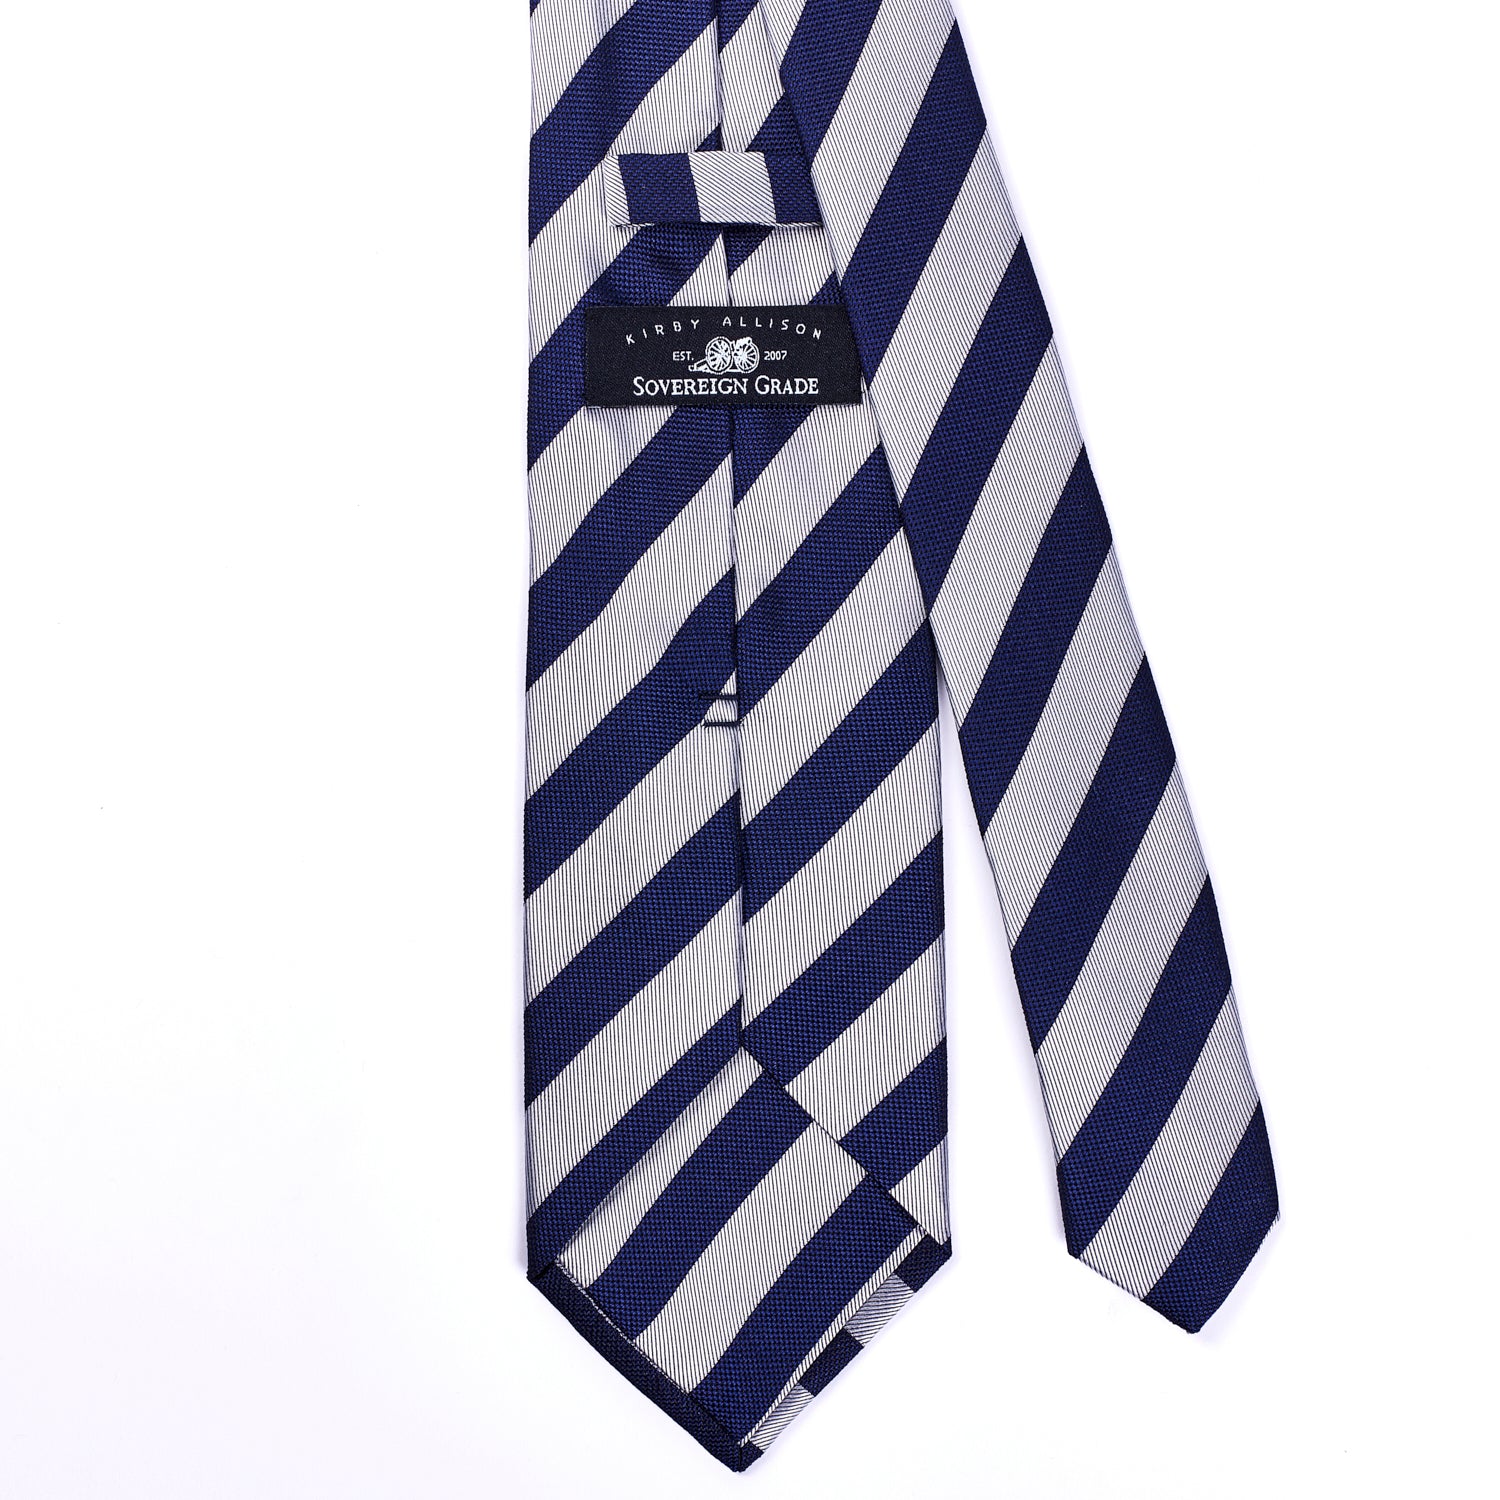 Sovereign Grade Woven Navy and Silver Rep Tie, 150 cm